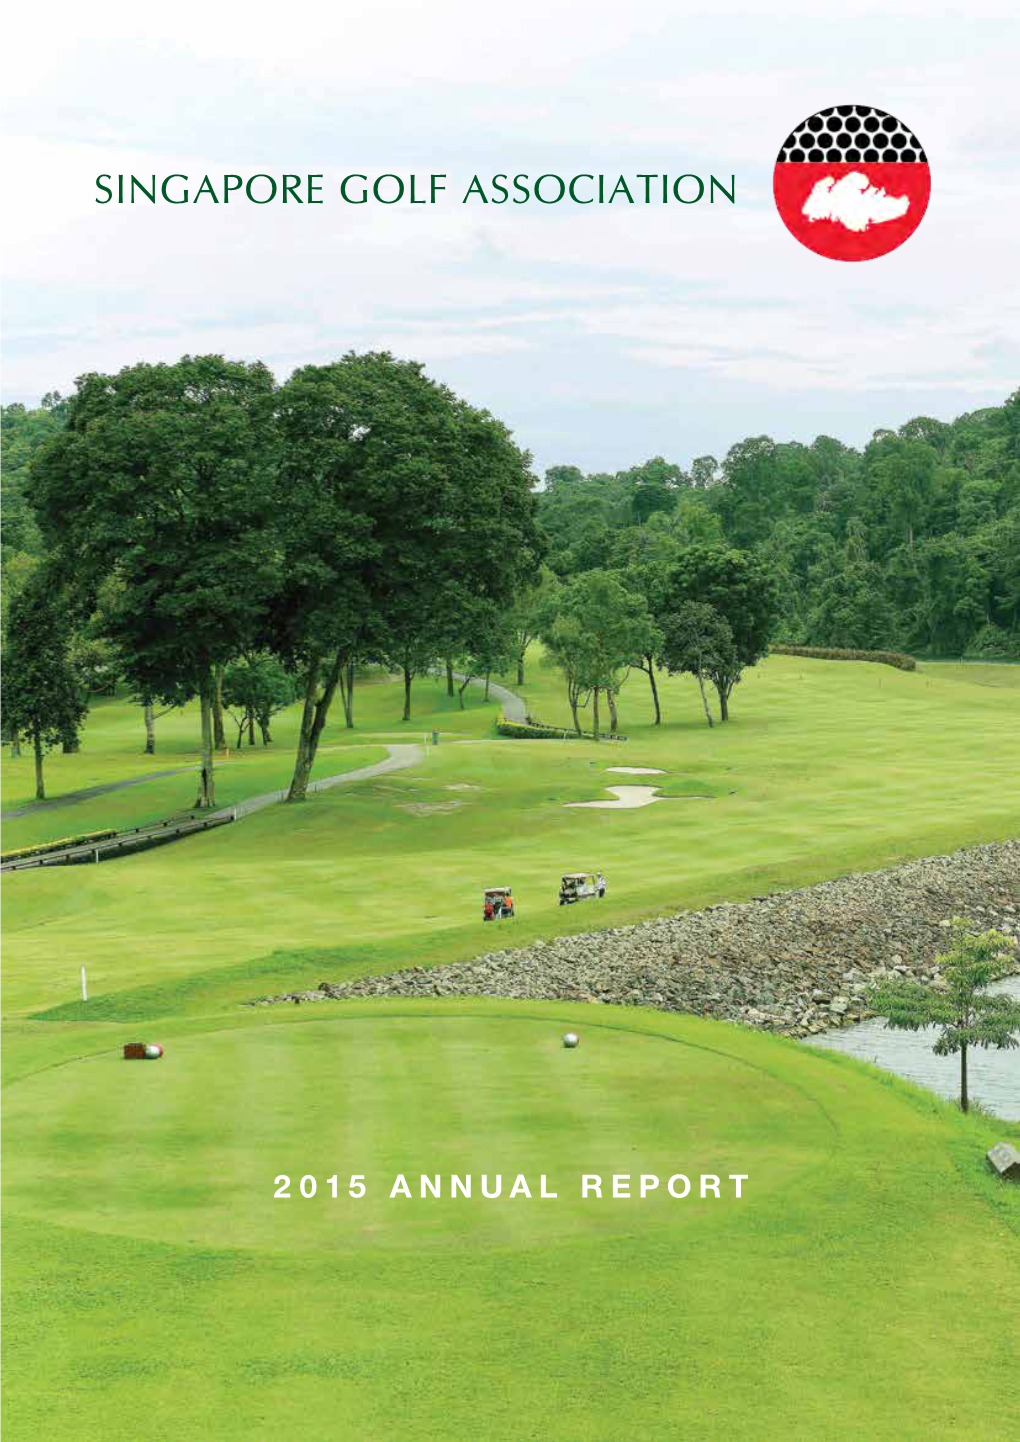 2015 Annual Report 2015 ANNUALREPORT (APR 15 – MAR 16)